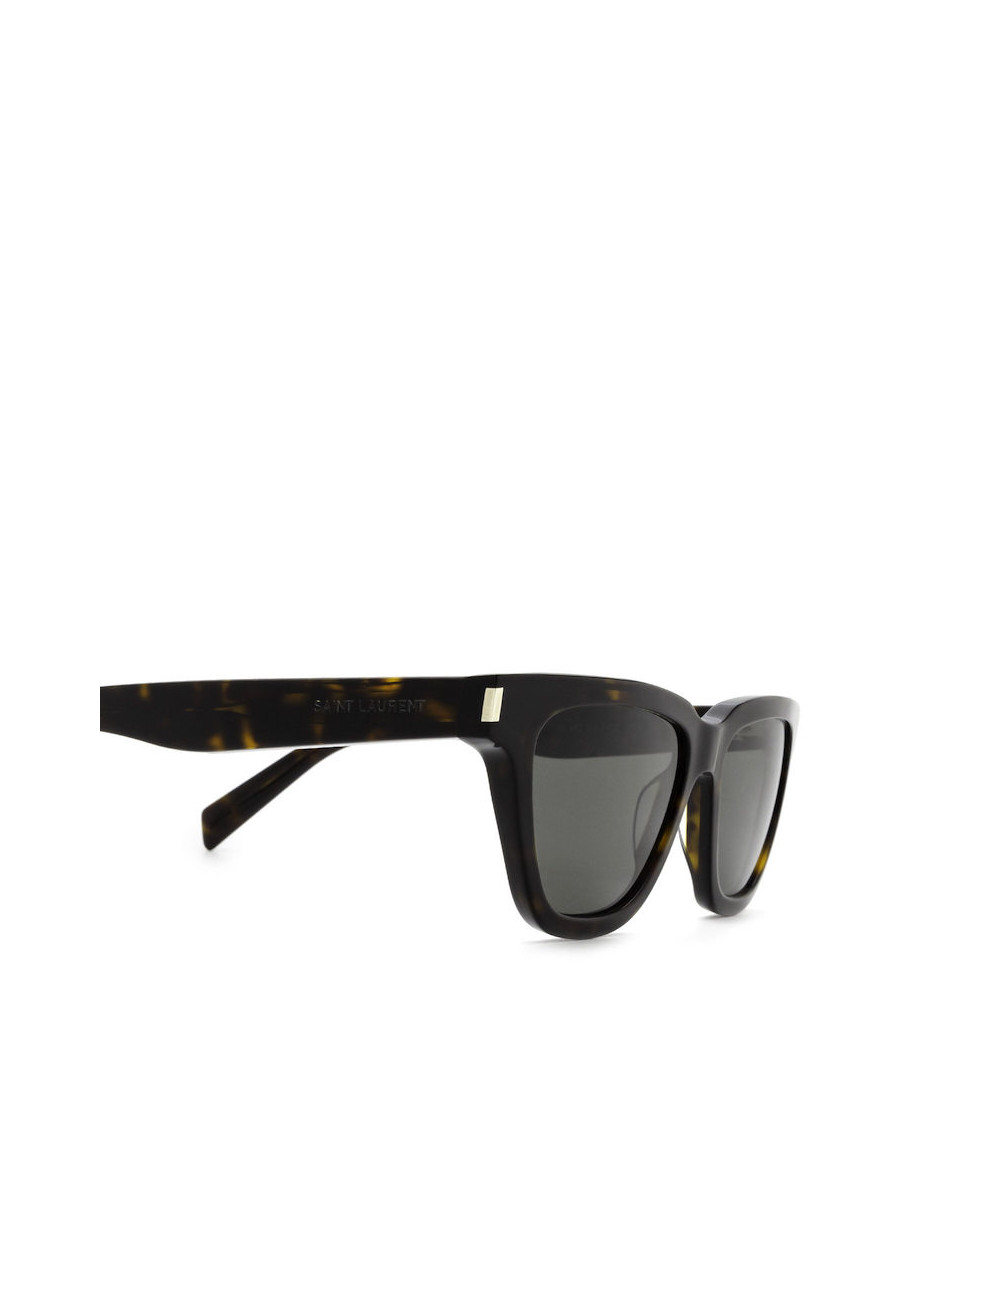 SL 462 Sulpice Acetate Sunglasses in Black - Saint Laurent